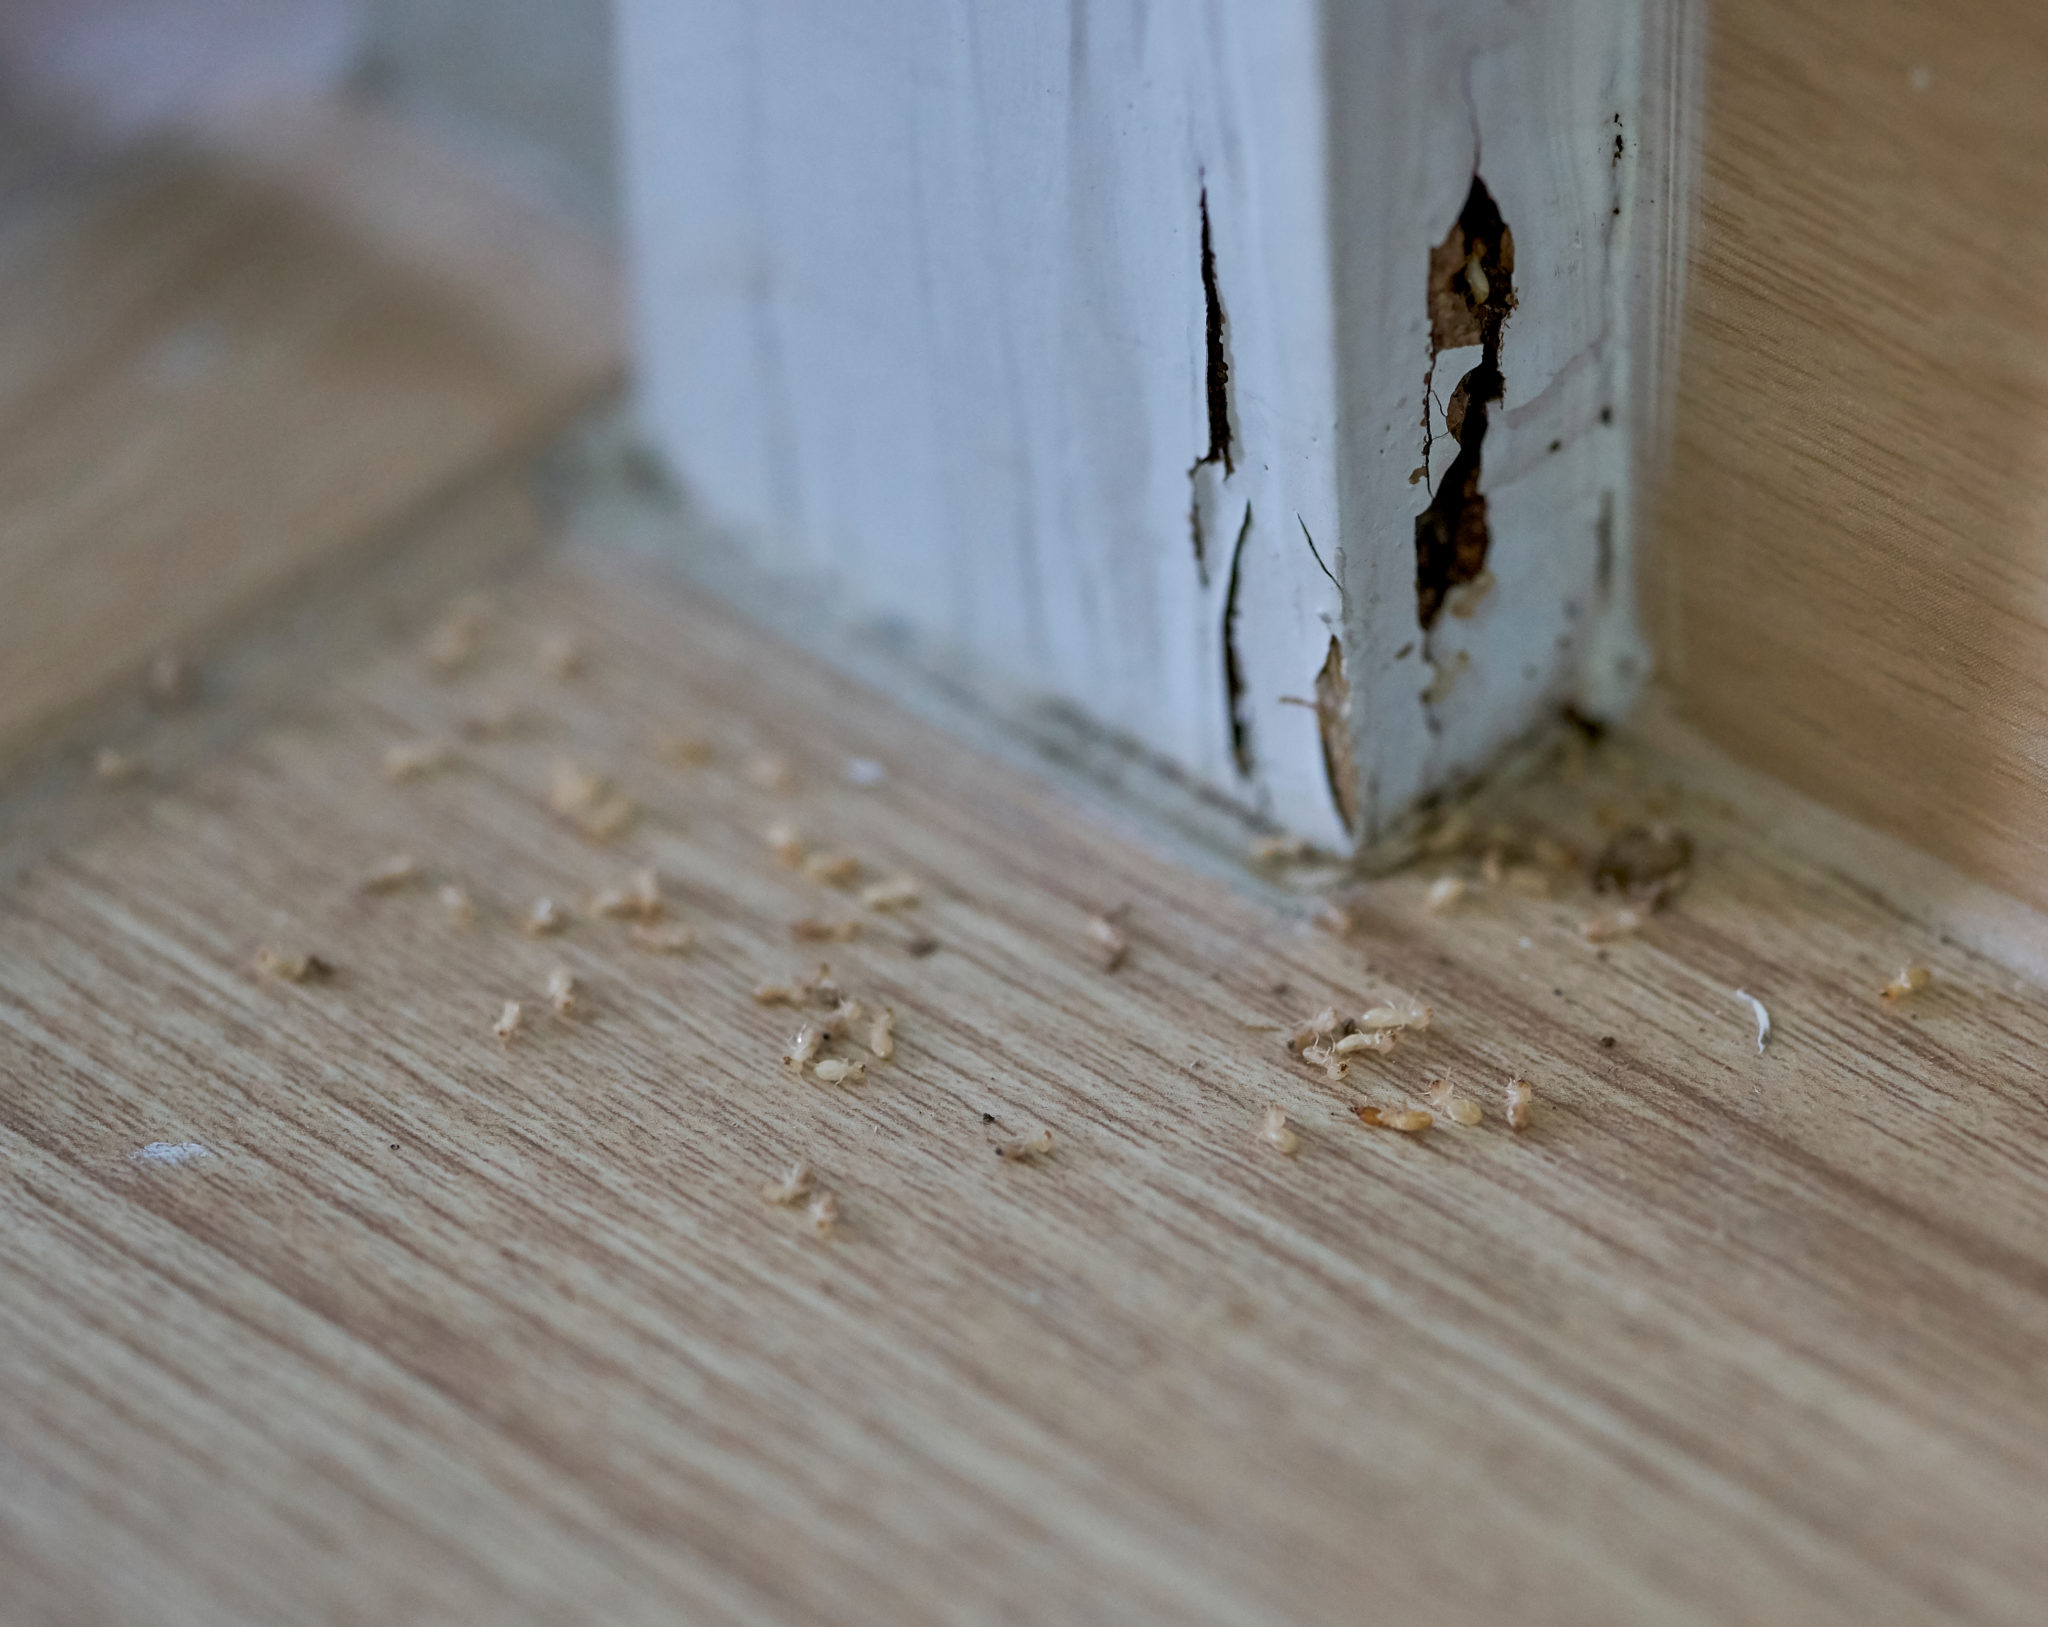 Termite damage to a home in Majura